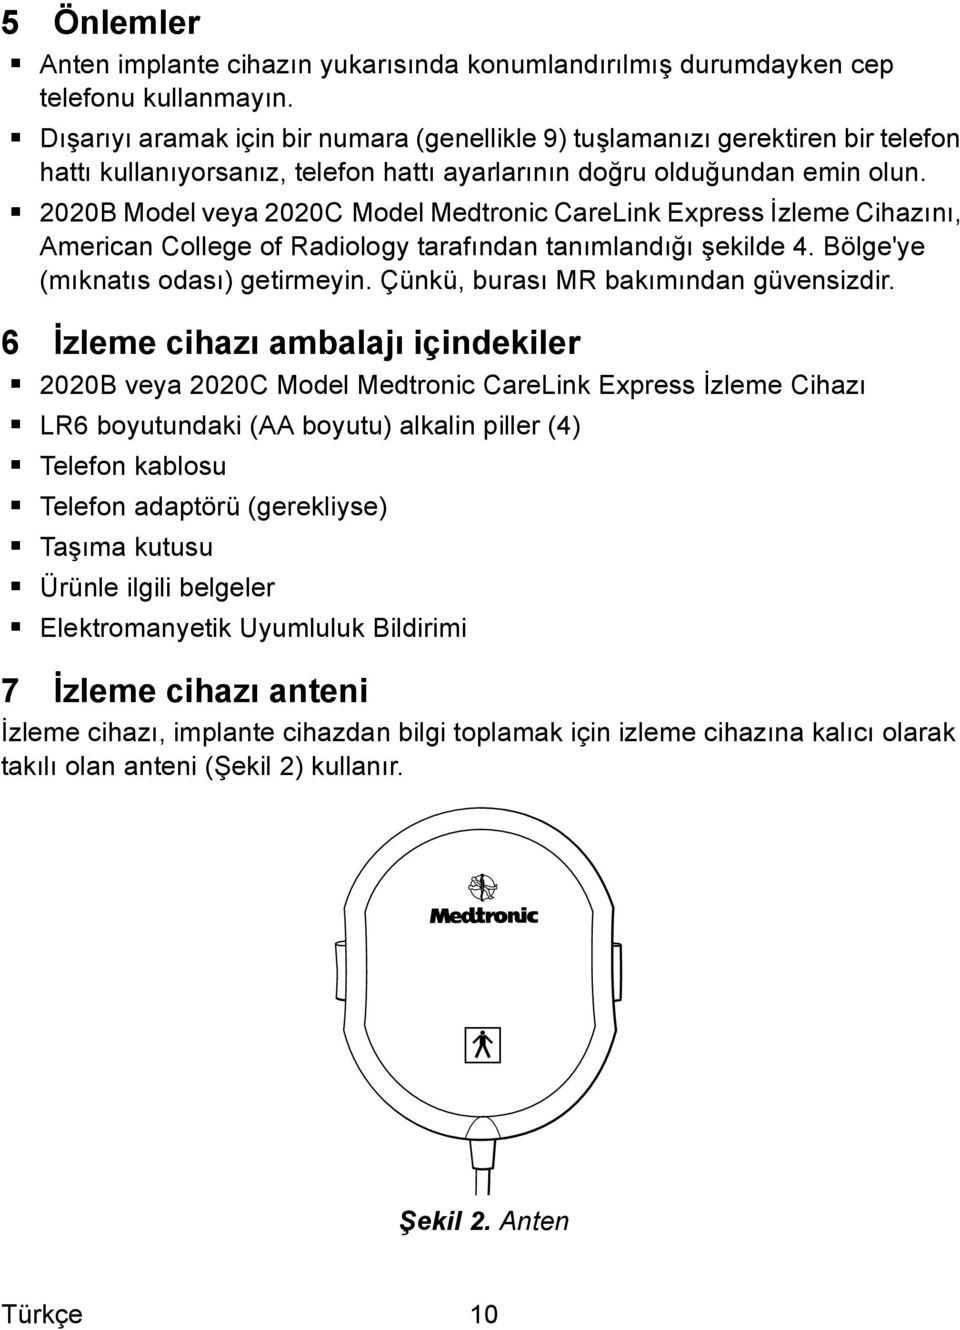 2020B Model veya 2020C Model Medtronic CareLink Express İzleme Cihazını, American College of Radiology tarafından tanımlandığı şekilde 4. Bölge'ye (mıknatıs odası) getirmeyin.